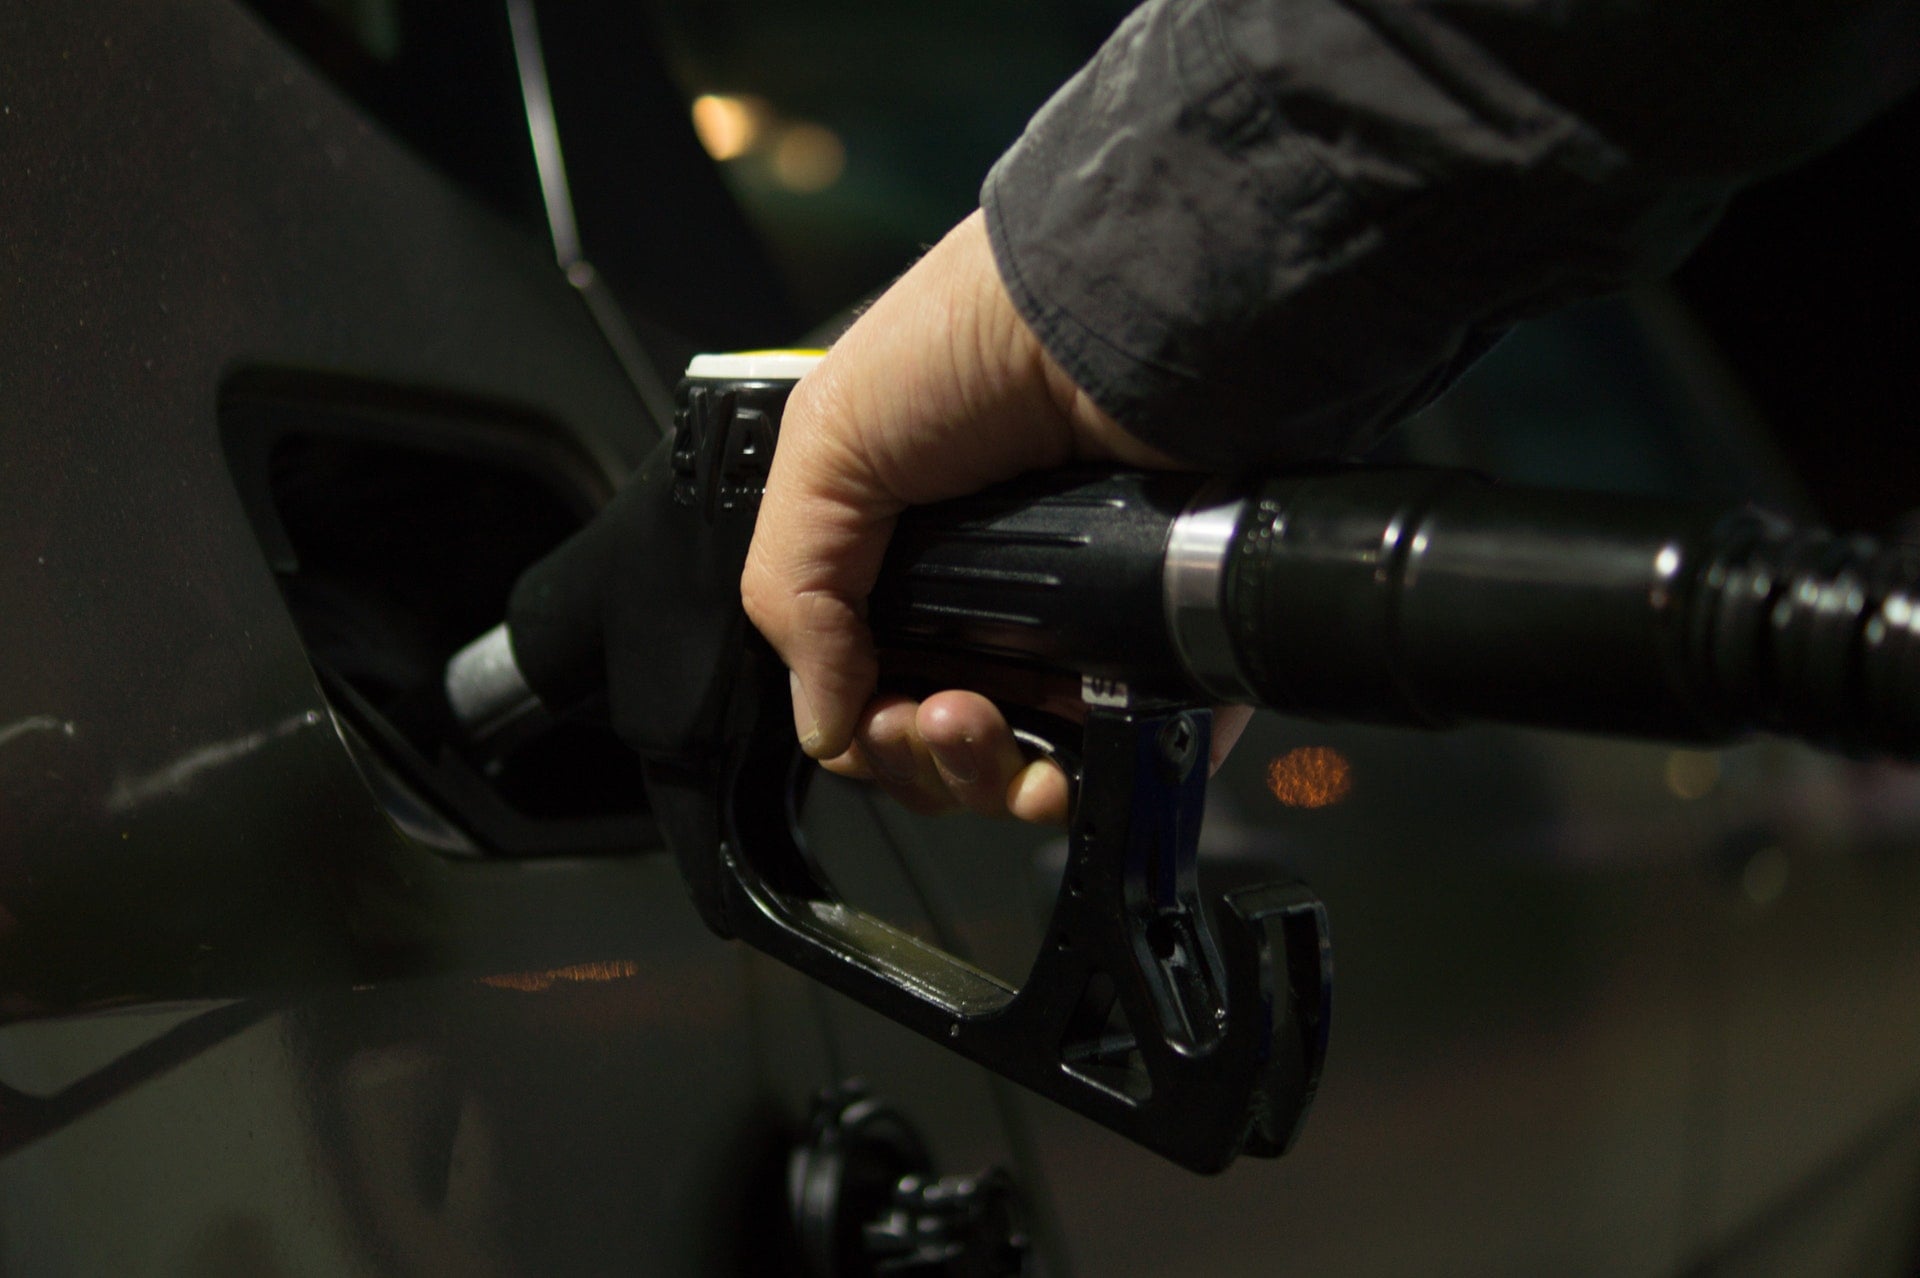 中油、台塑化汽油、柴油 ⛽️ 浮動油價最新價格資訊（2019.8.26~9.10）